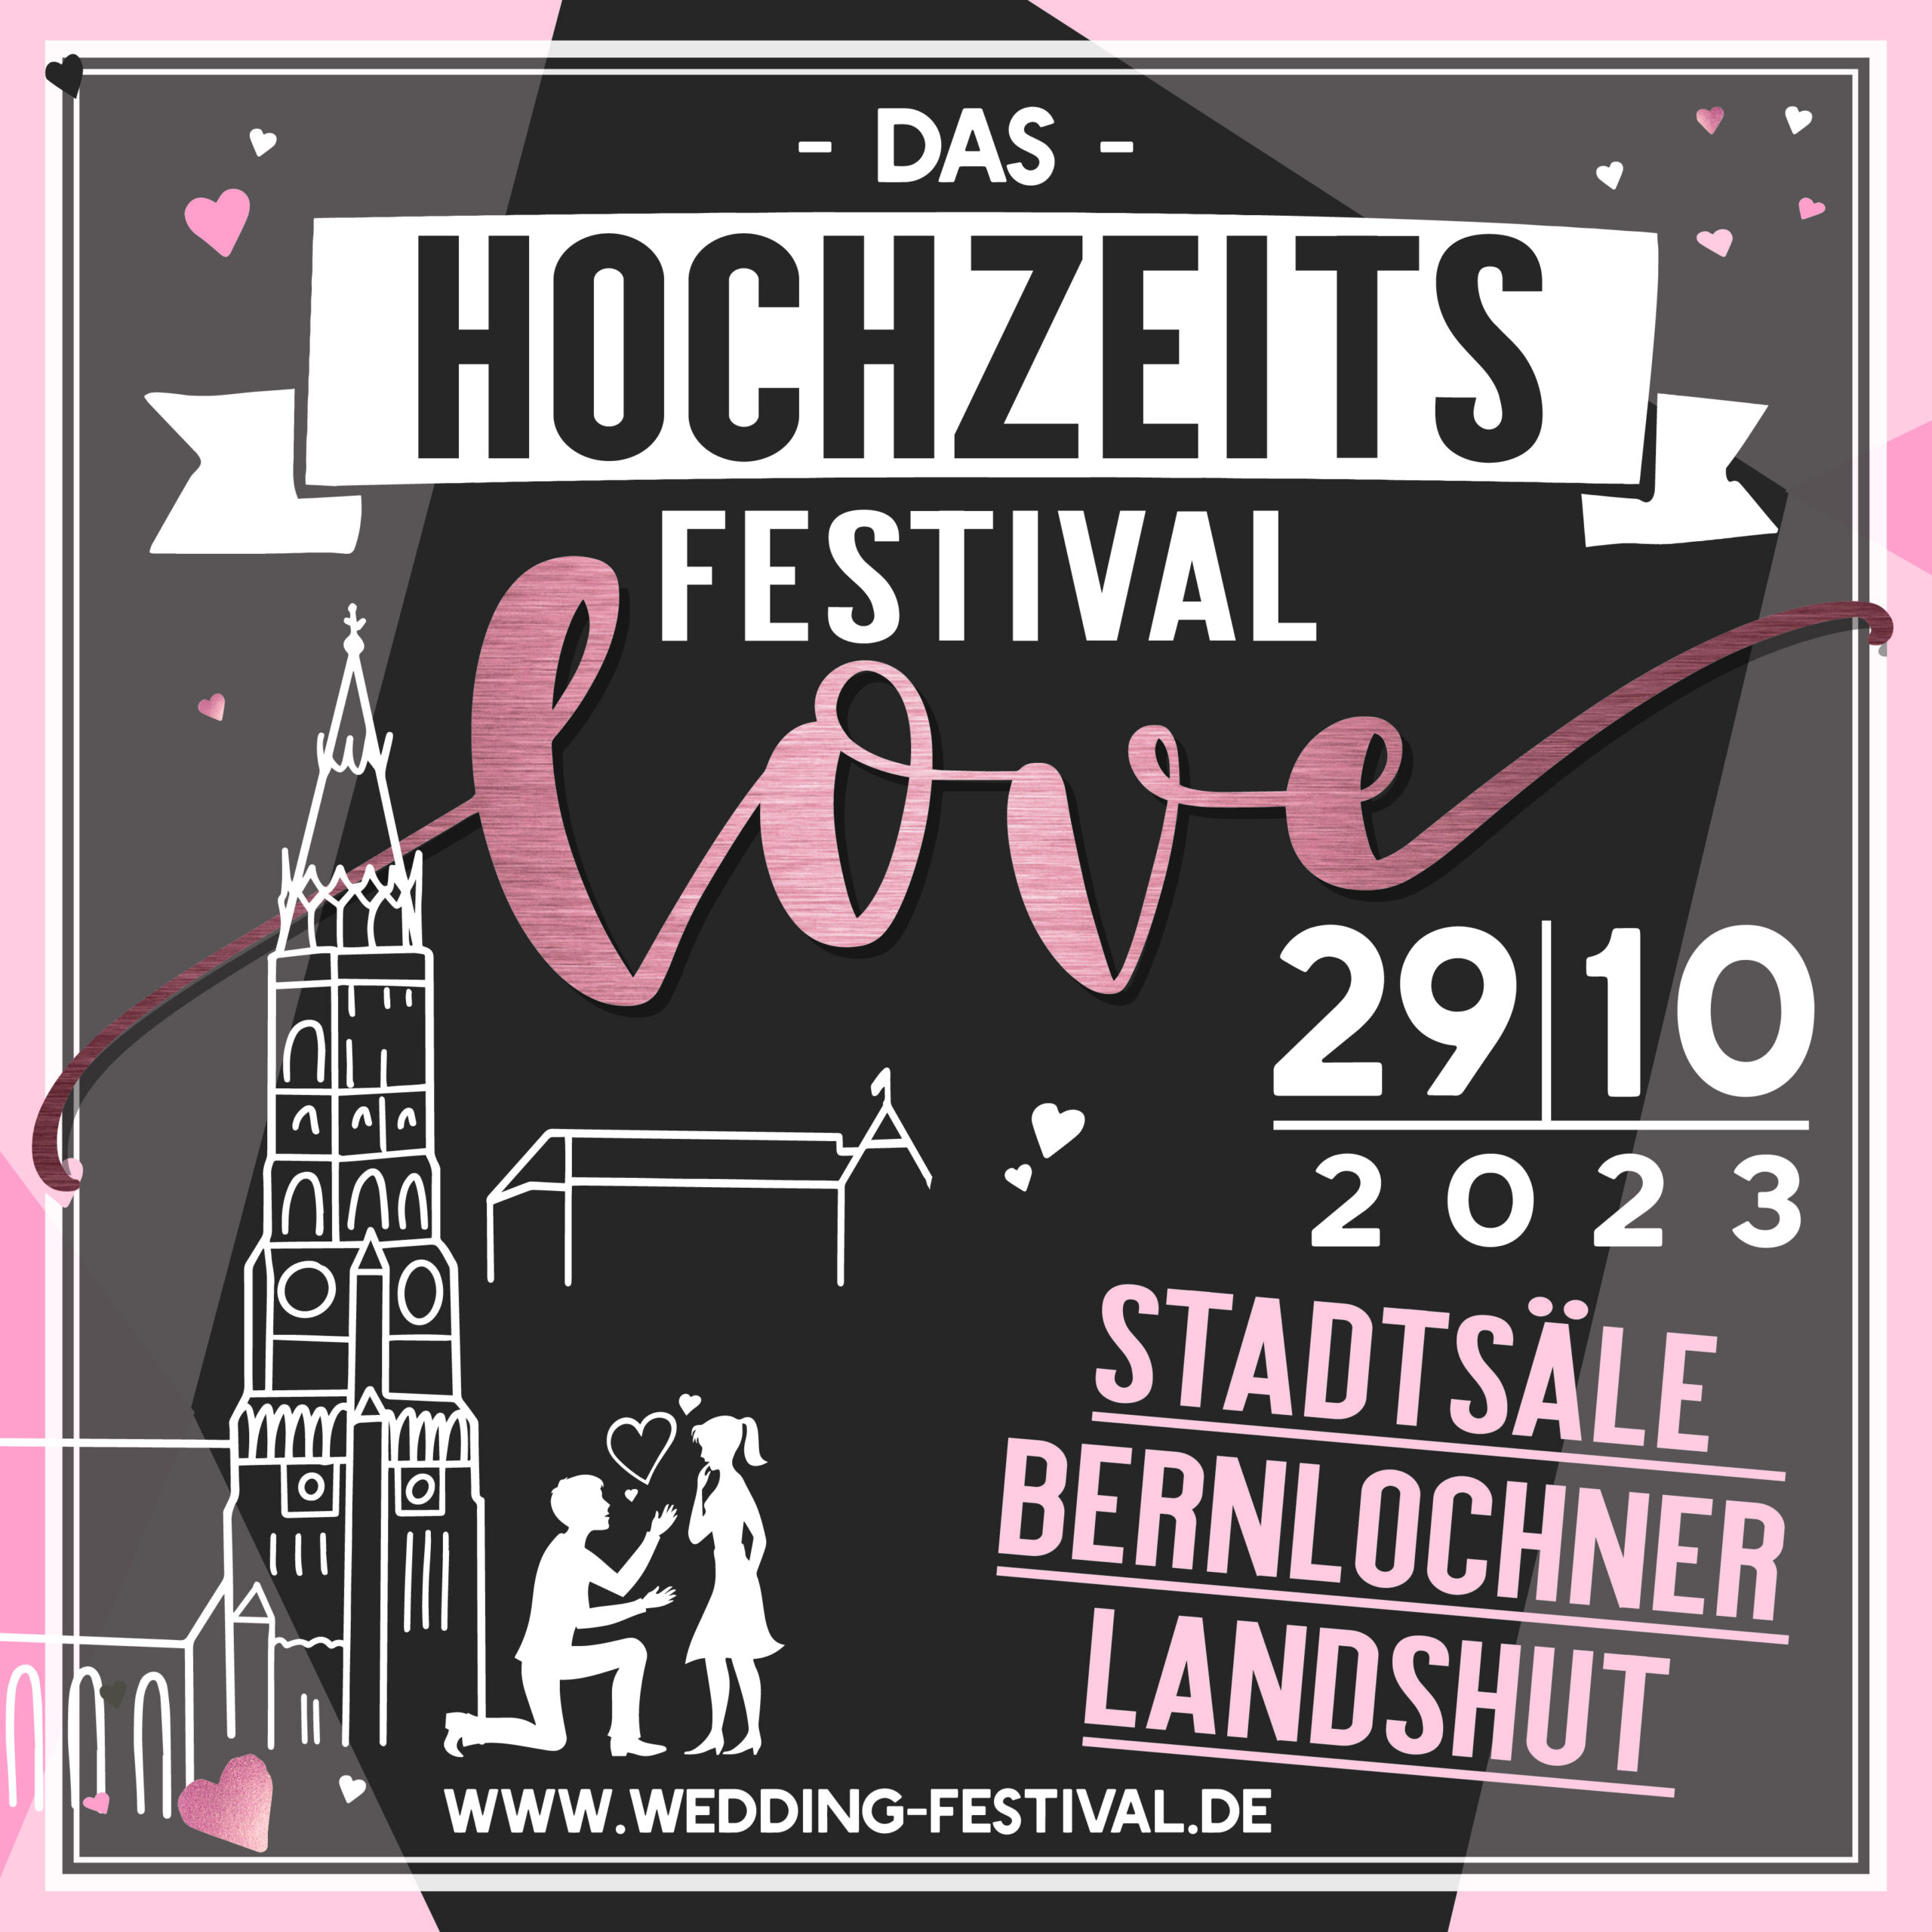 Plakat mit Zeichnung der Martinskirche, Burg Trausnitz und einem verliebten Paar zur Ankündigung de LOVE Hochzeitsfestivals am 29.10.2023 in den Stadtsäle Bernlochner Landshut